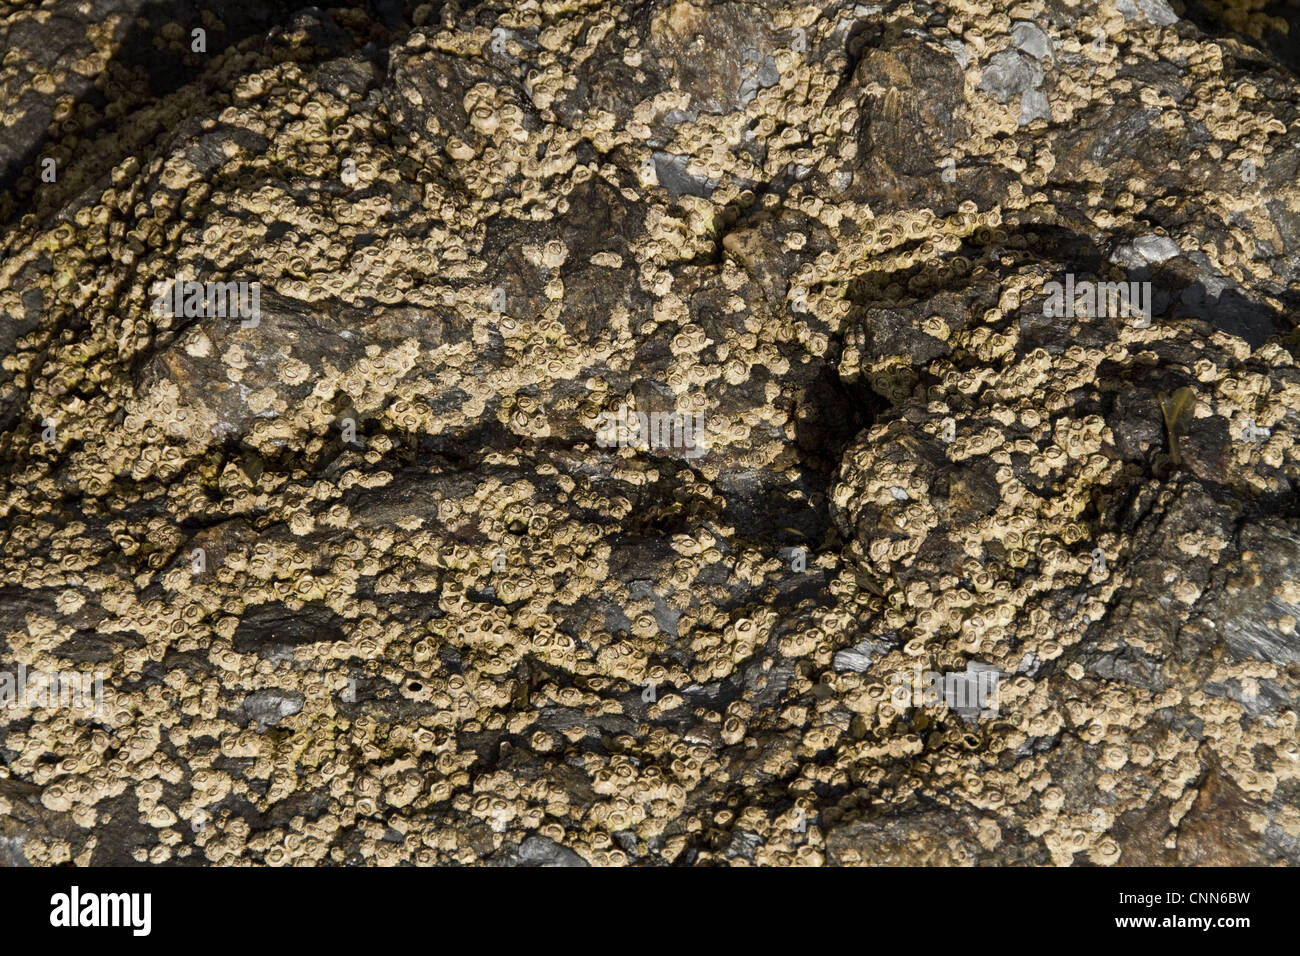 Semibalanus balanoides généralisée commune boreo-espèces arctiques acorn barnacle roches commune d'autres substrats de la zone intertidale Banque D'Images